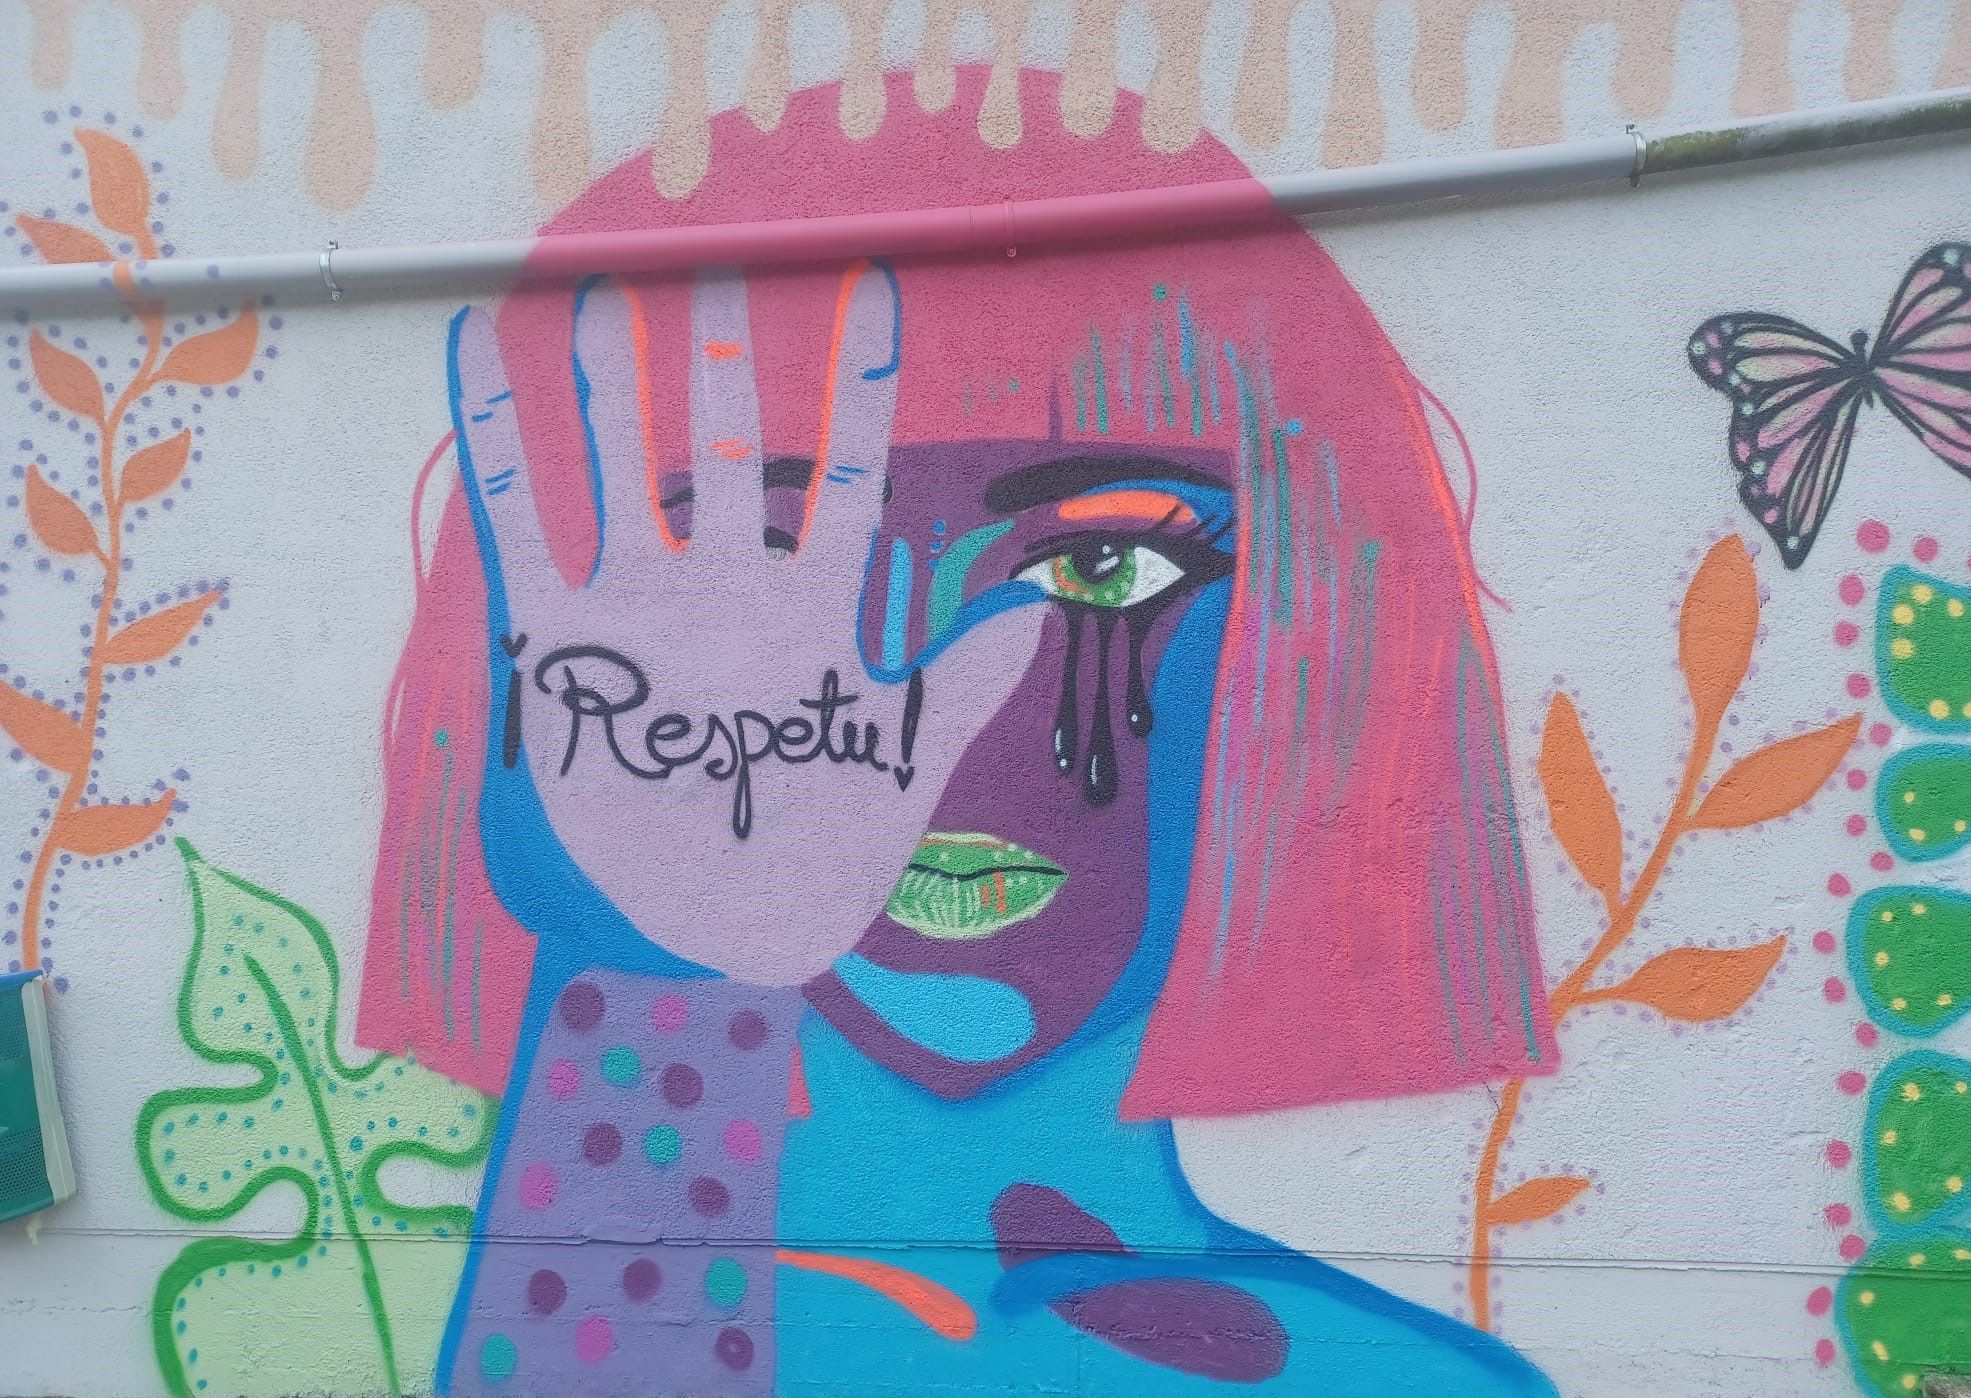 La igualdad pinta mucho en Llanera: así son los grafitis reivindicativos del instituto de Posada